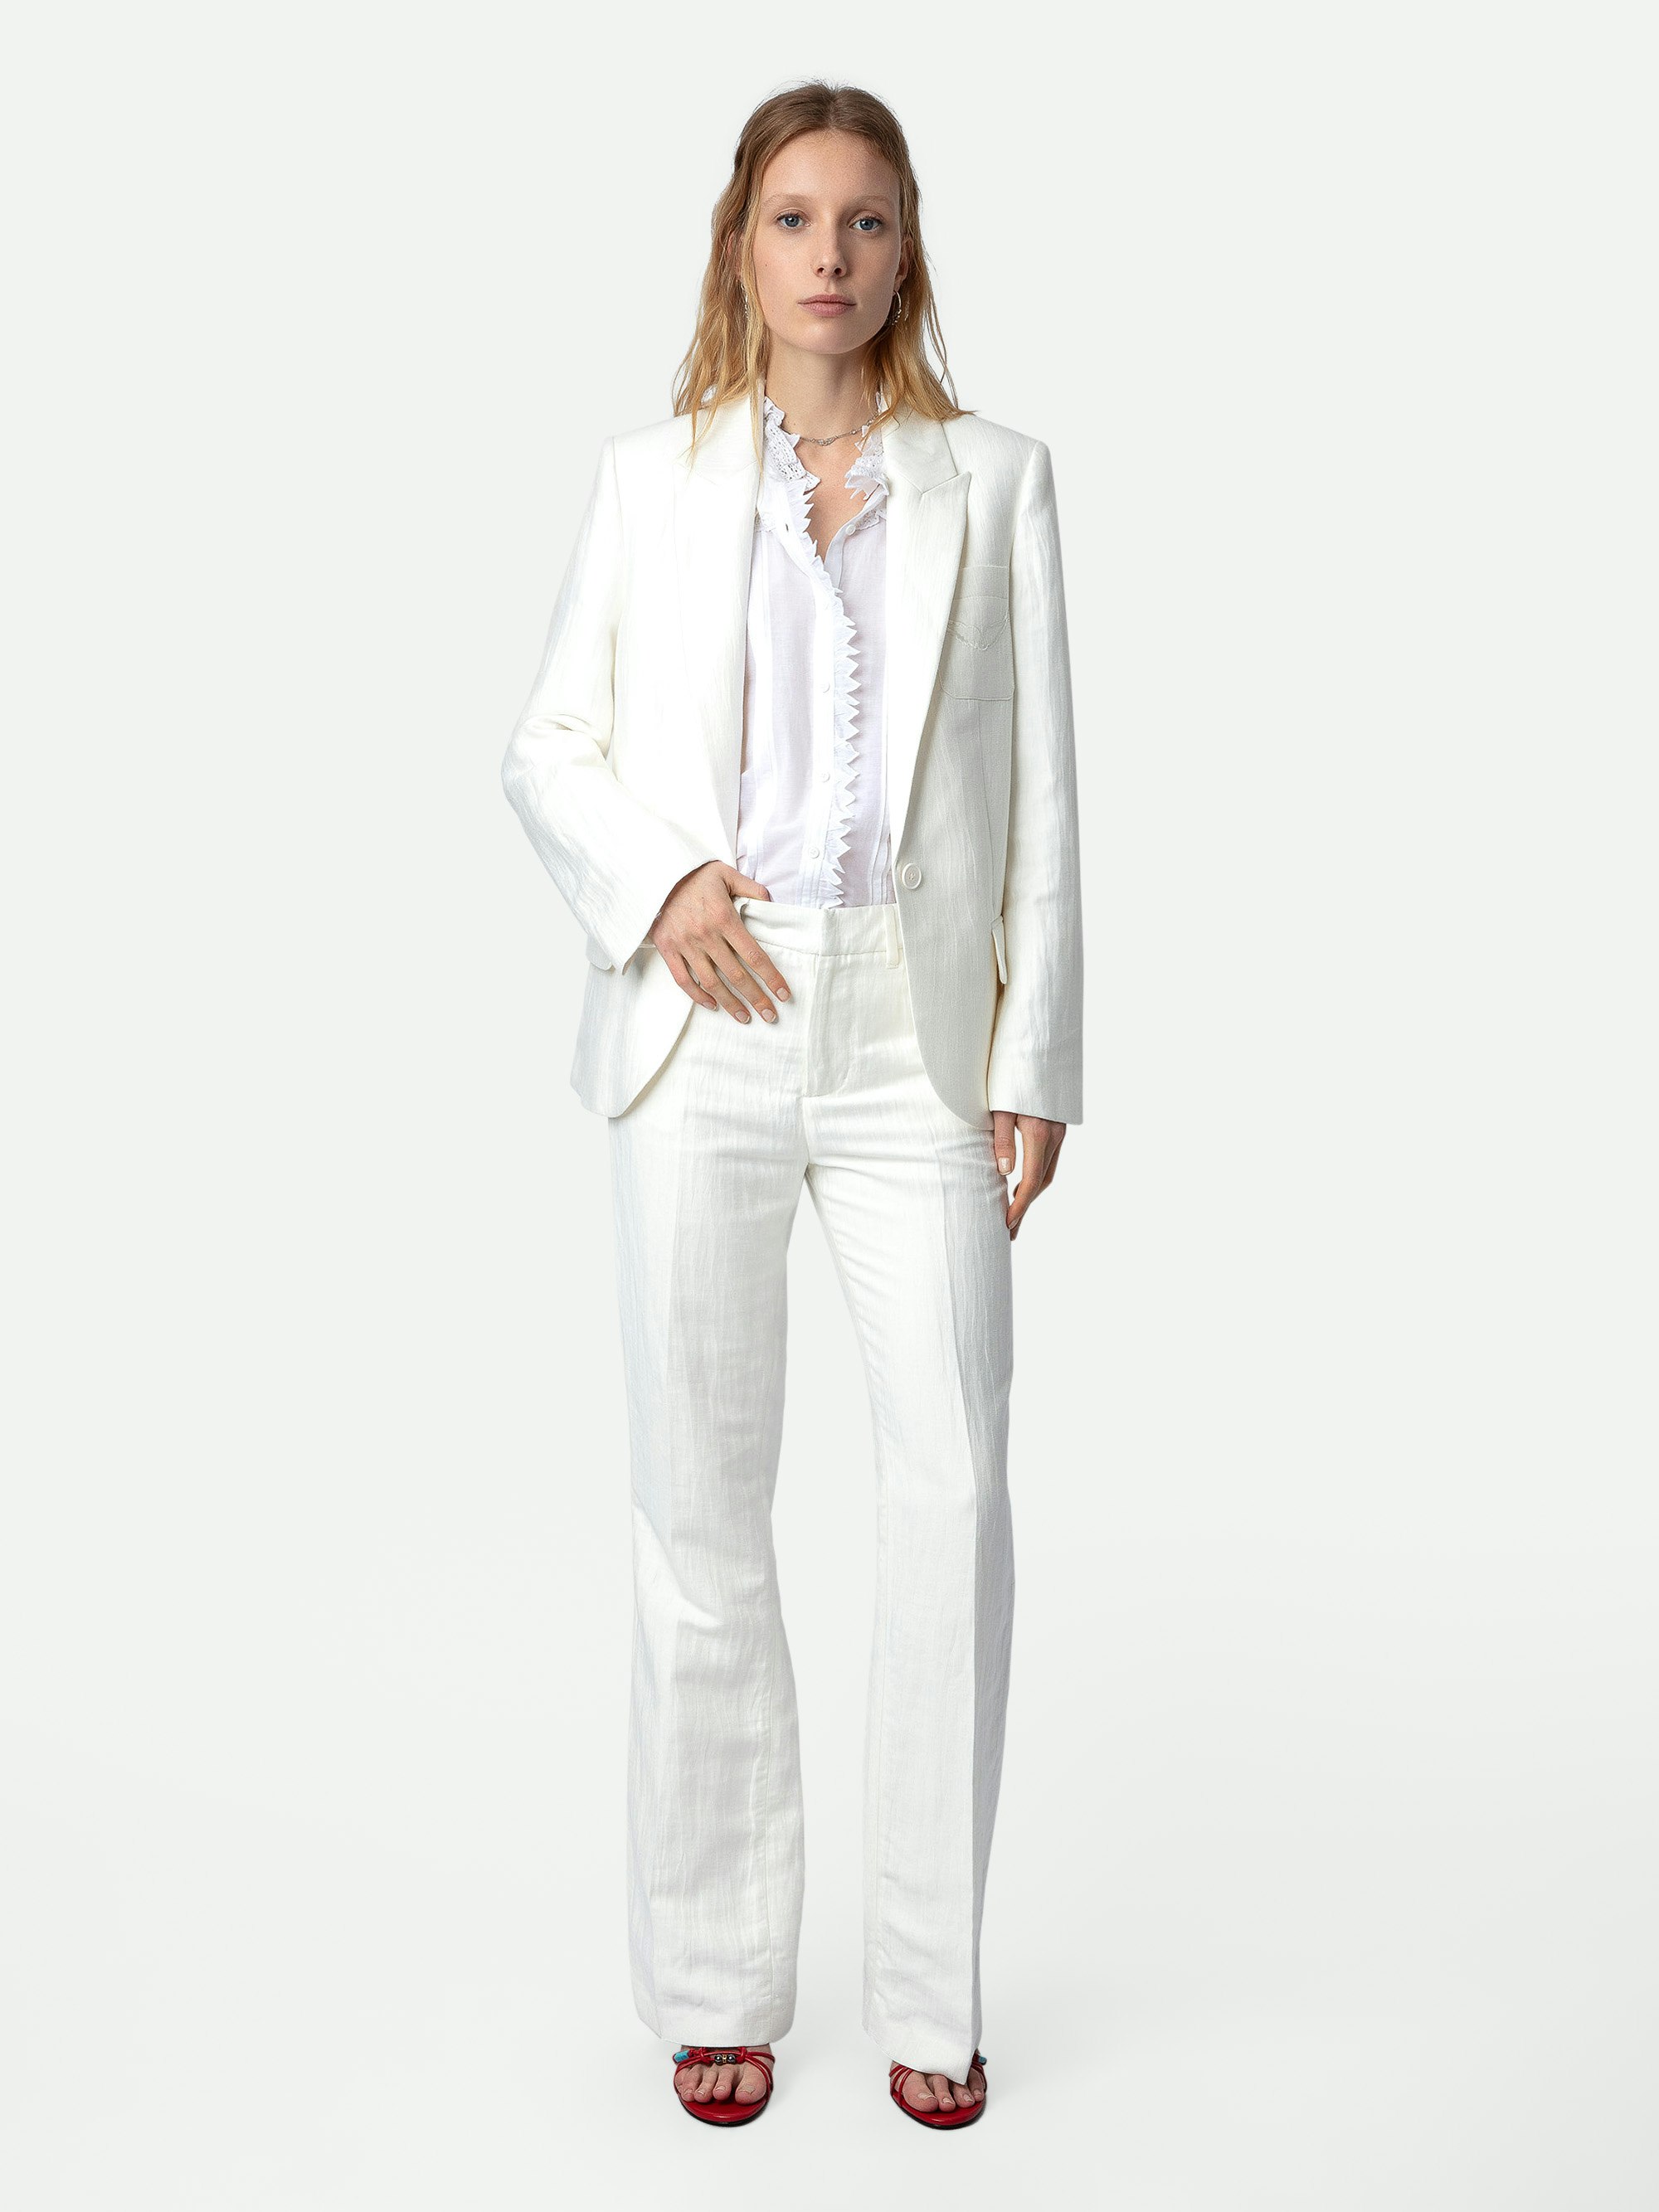 Blazer Vow - Weiße Anzugjacke mit Reverskragen, Knopfverschluss und Taschen mit Flügelmotiv.